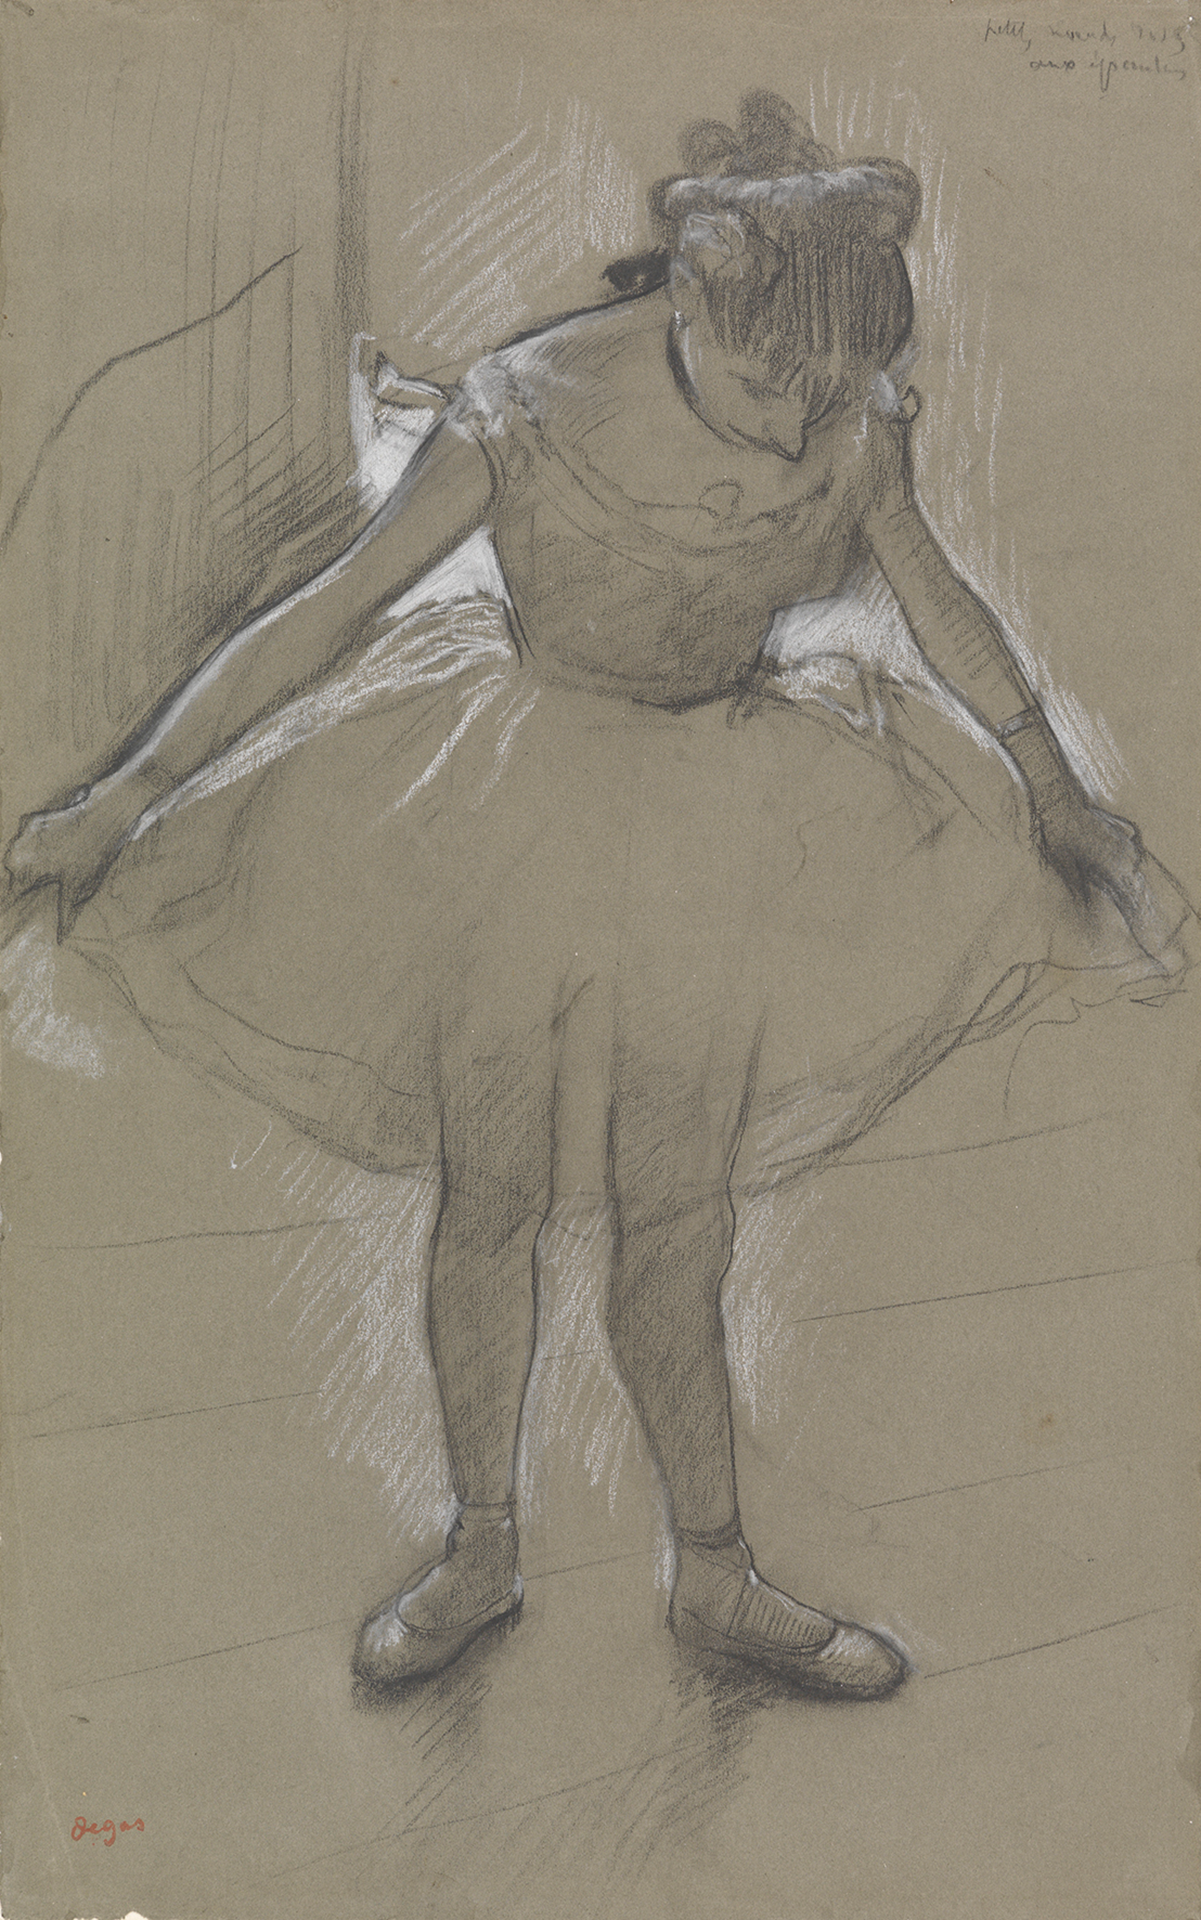 Kreidezeichnung von Edgar Degas, die eine junge Balletttänzerin zeigt